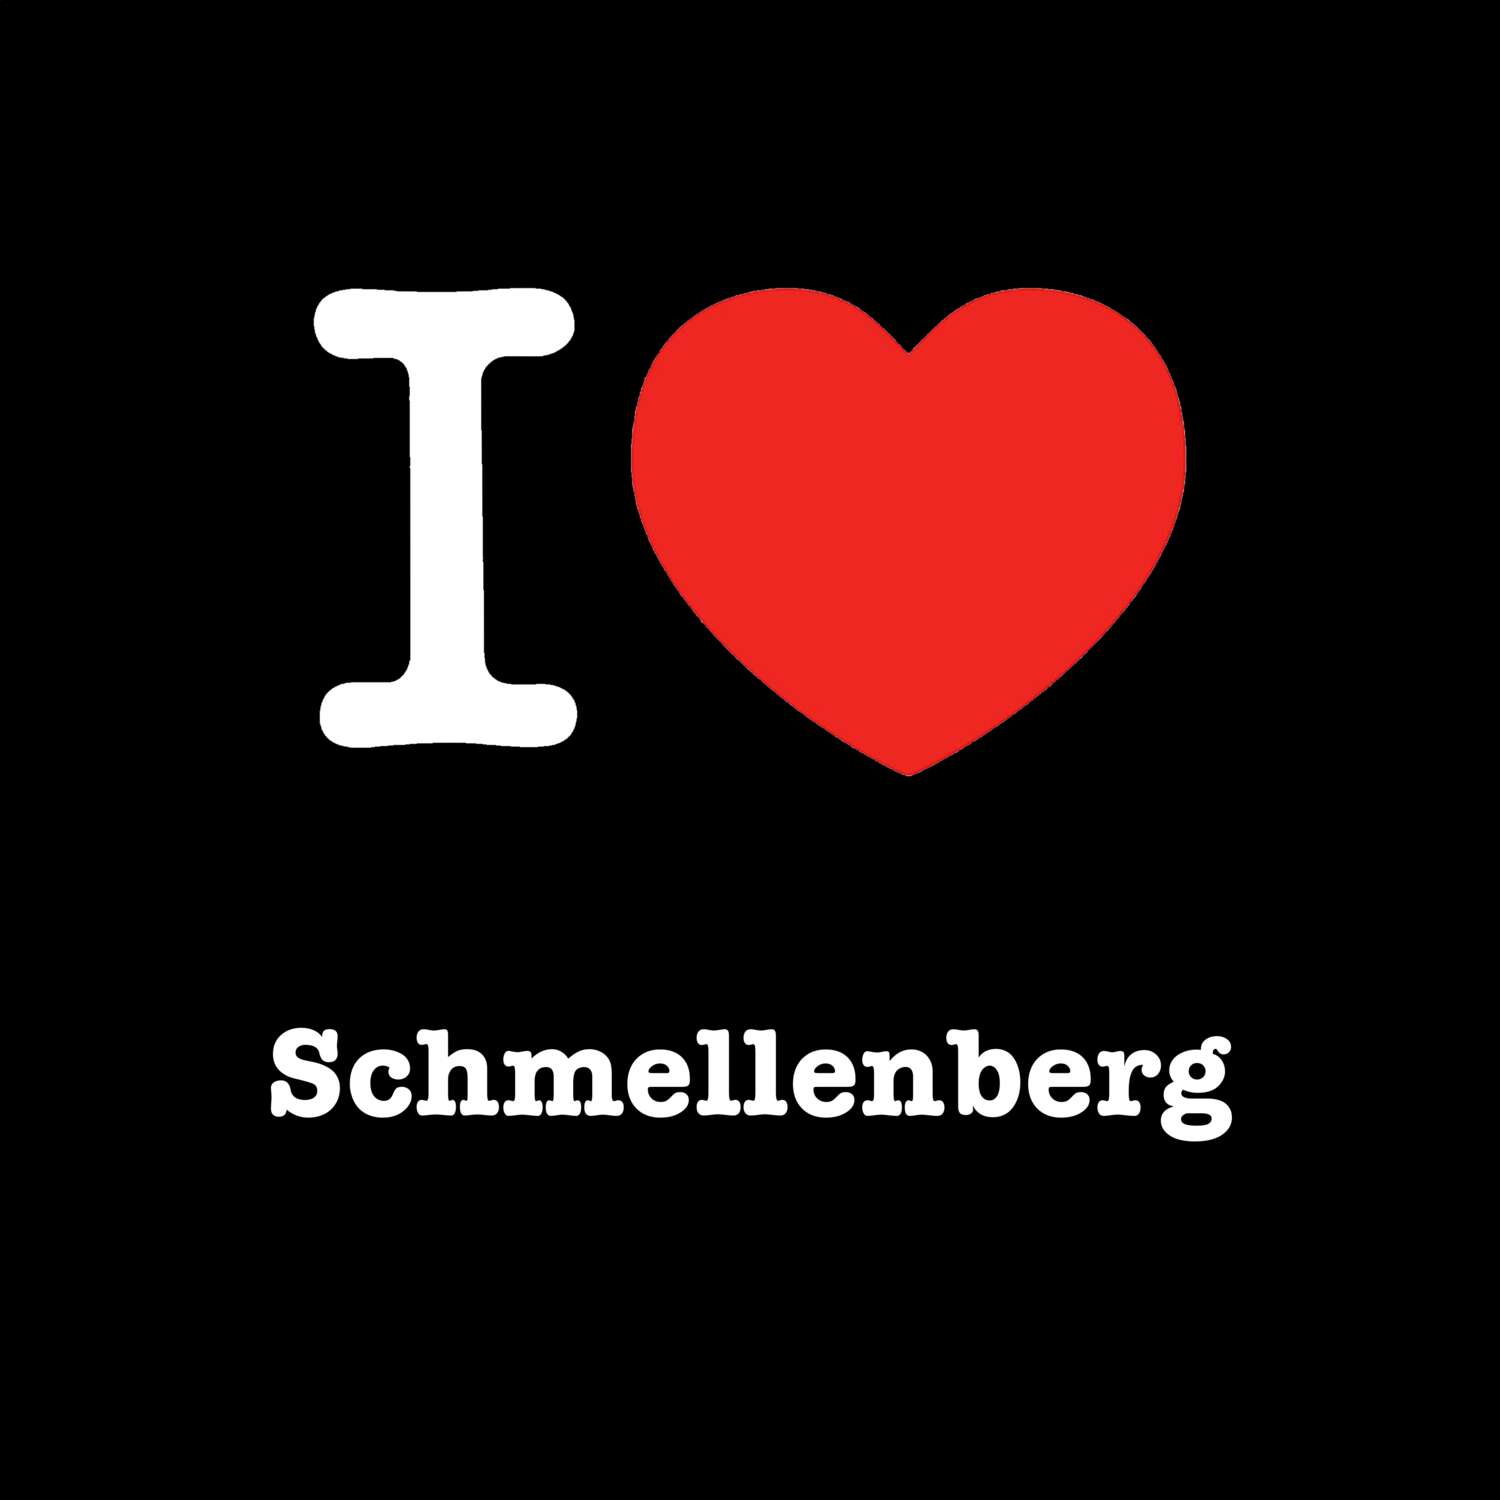 Schmellenberg T-Shirt »I love«